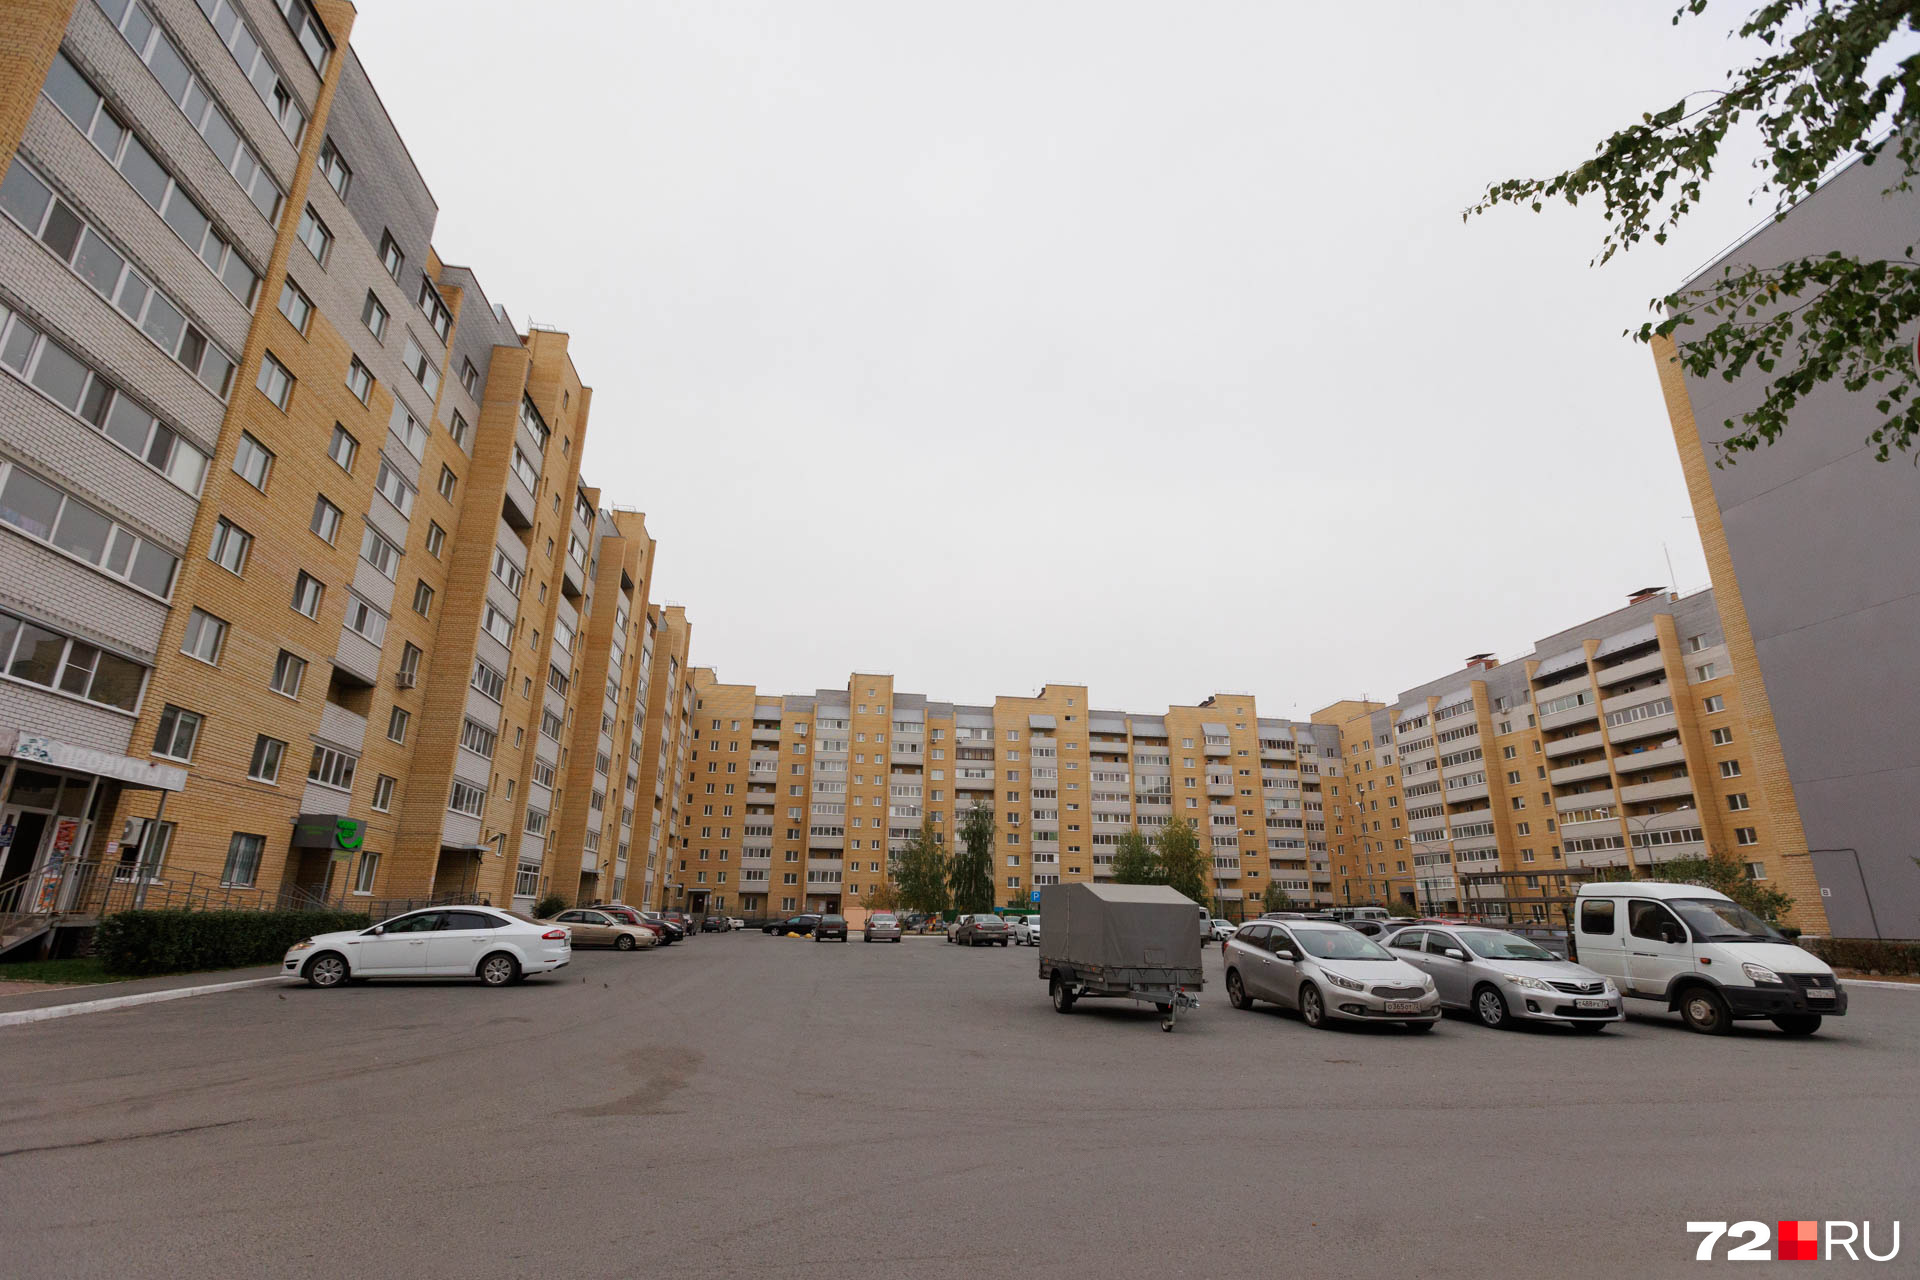 Точно такие же дома можно увидеть на улице Самарцева у пруда Южный, но там более престижный район и квартиры выставляют на продажу редко